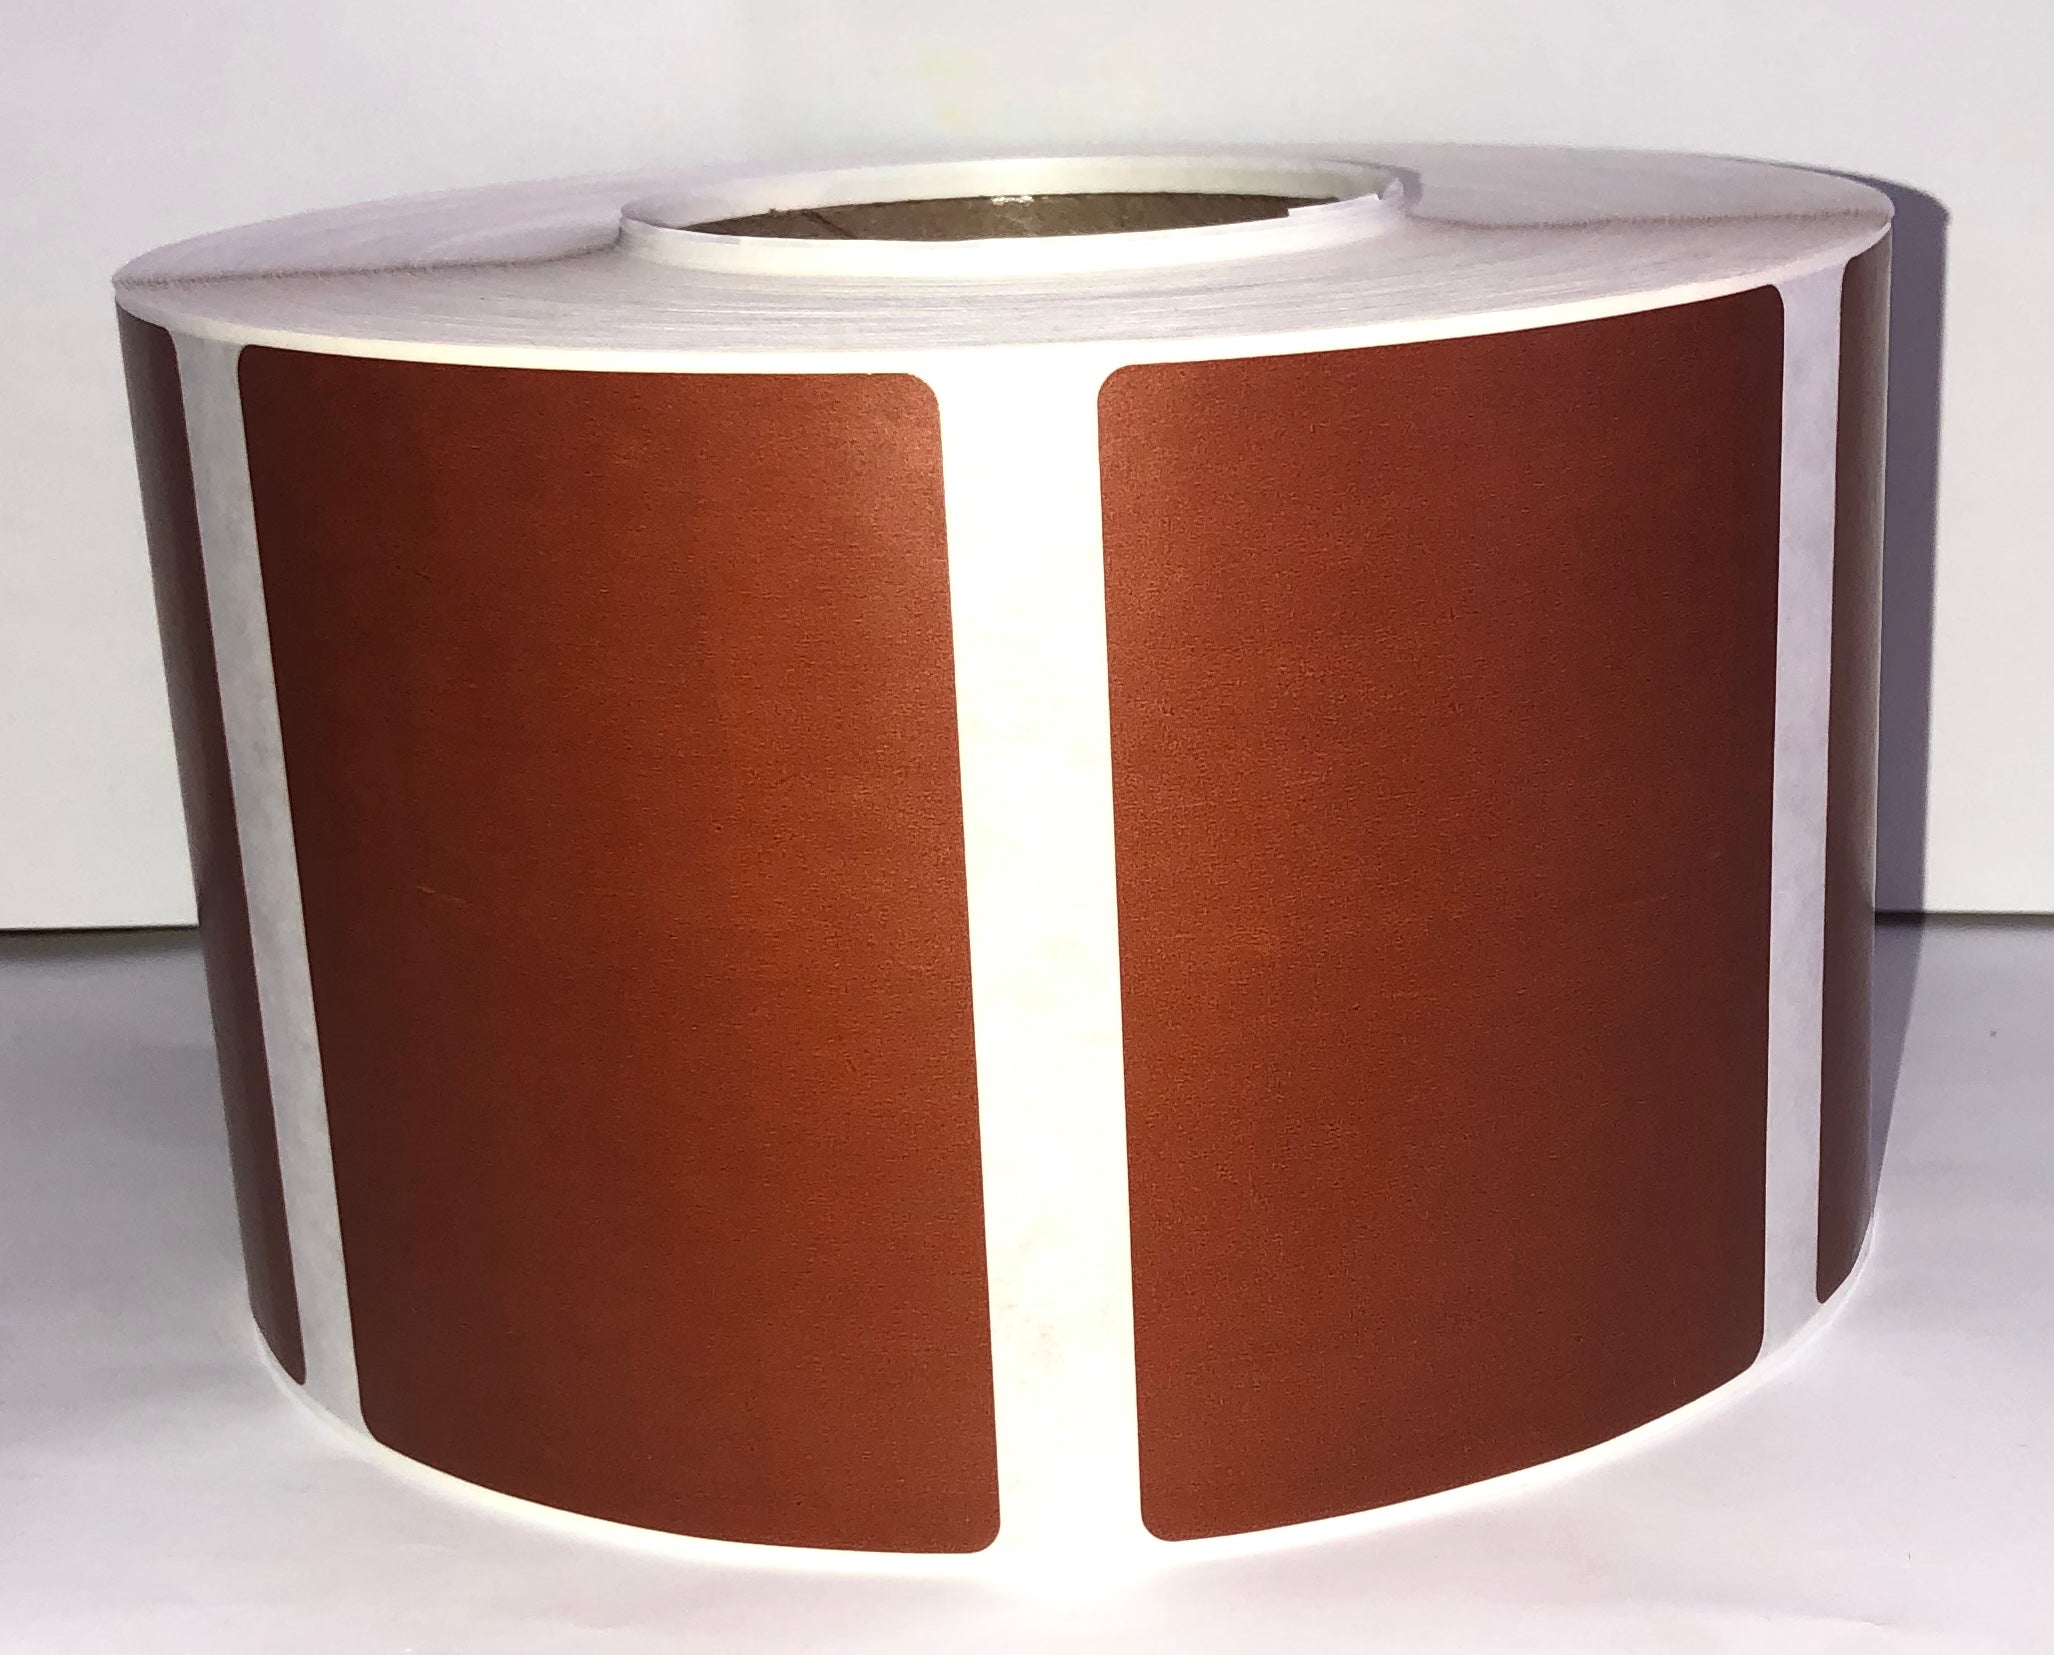 Rouleau 250 étiquettes adhésives transfert thermique 101,6x152,4 mm